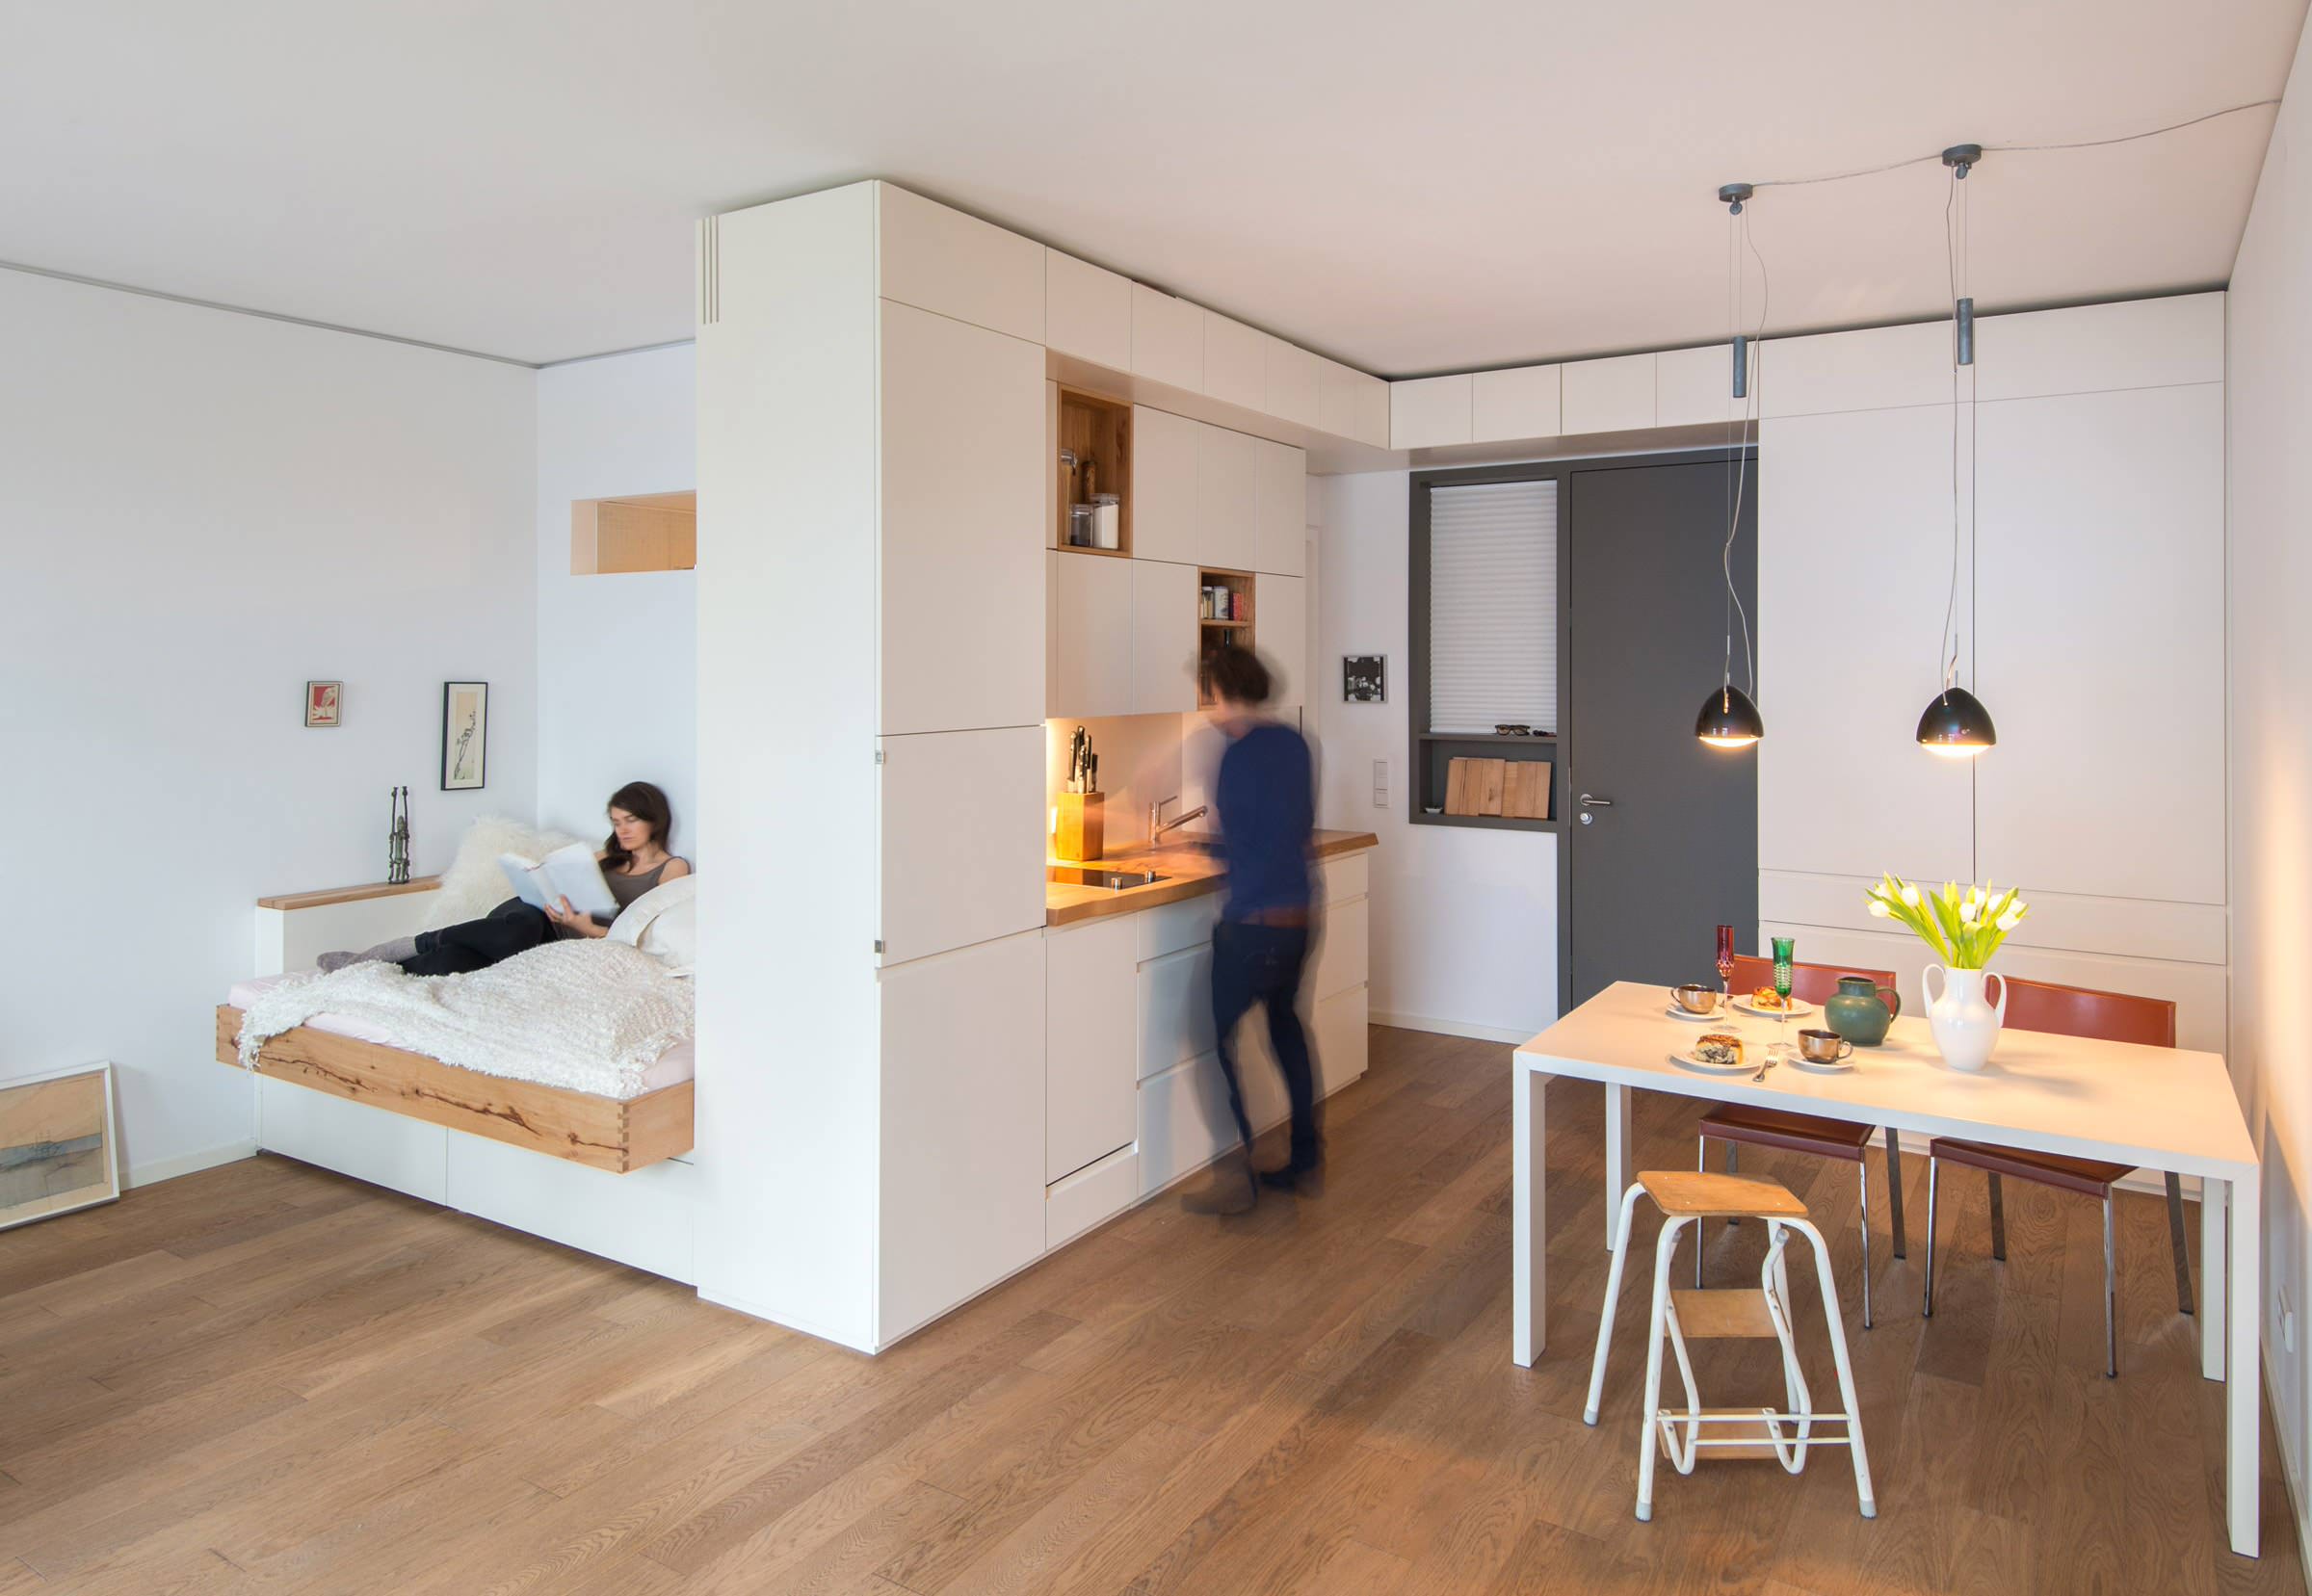 Дизайн кухни-гостиной 30 кв.м. - выбираем идеальный дизайн